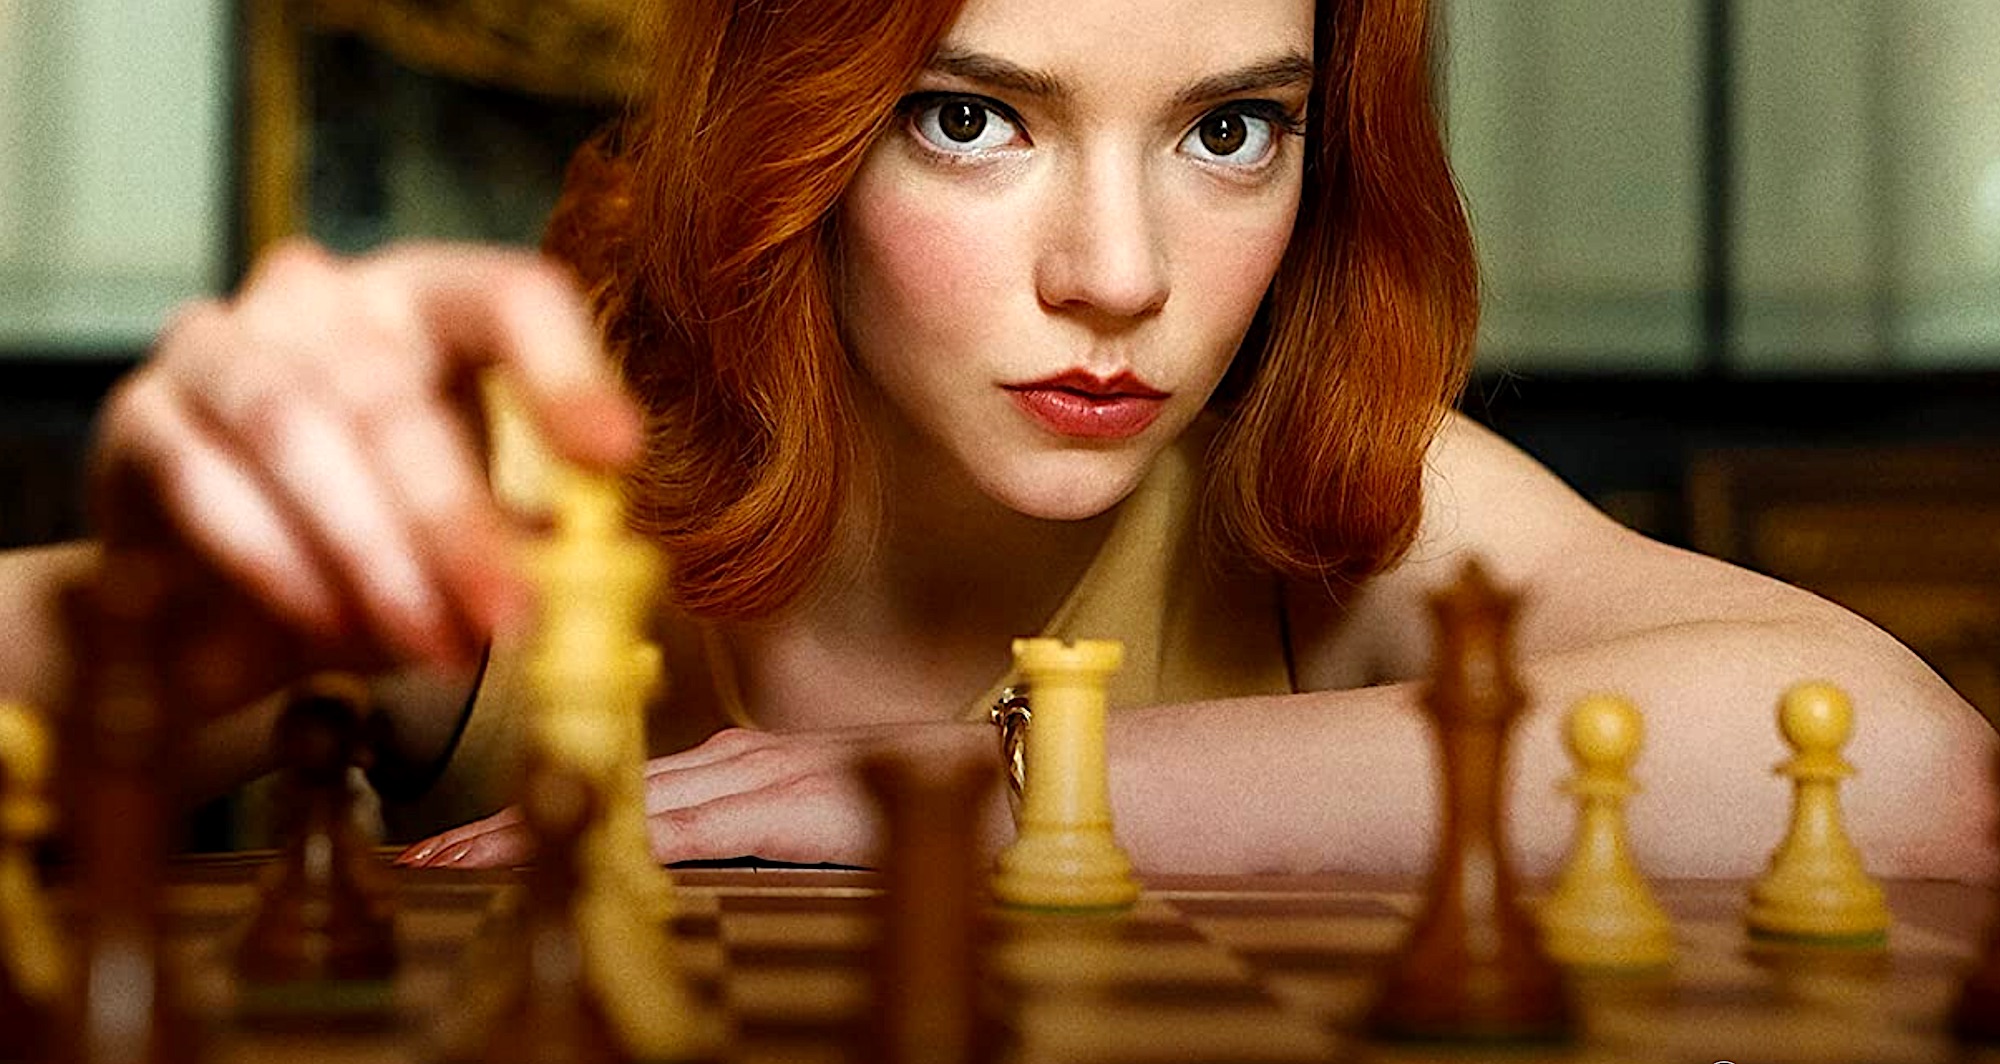 The Queen's Gambit: meet the real Beth Harmon… Bobby Fischer